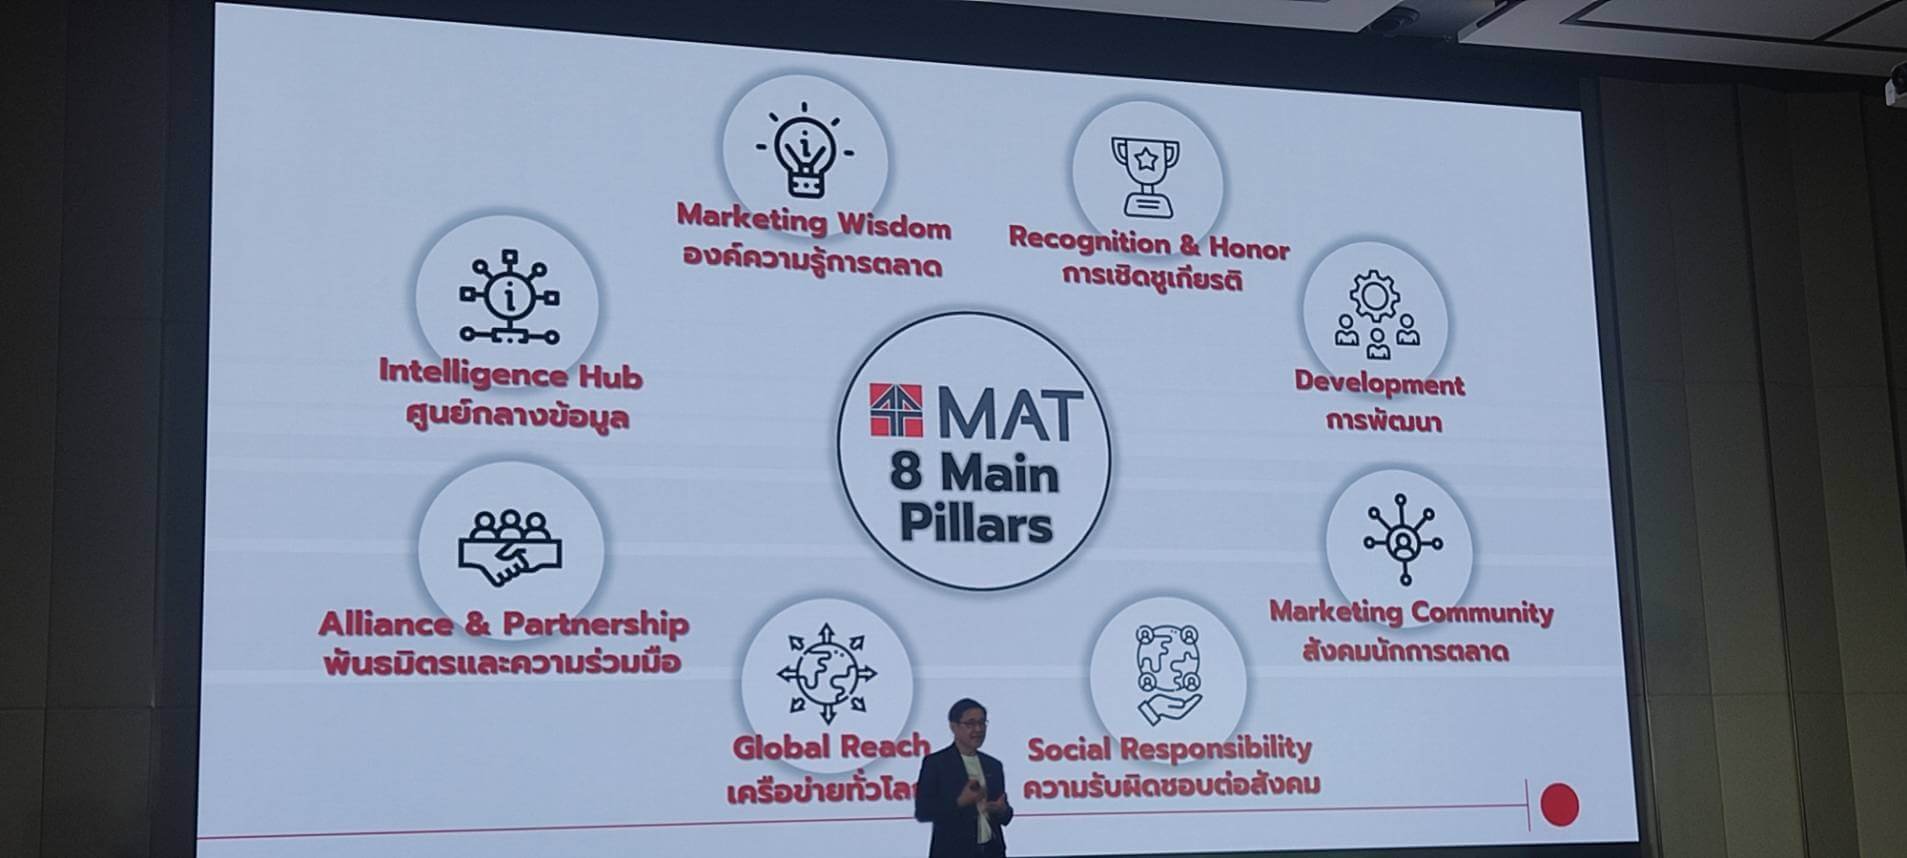 5 ปัจจัยสู่ความสำเร็จของธุรกิจไทย ครึ่งปีหลัง 2567 By MAT